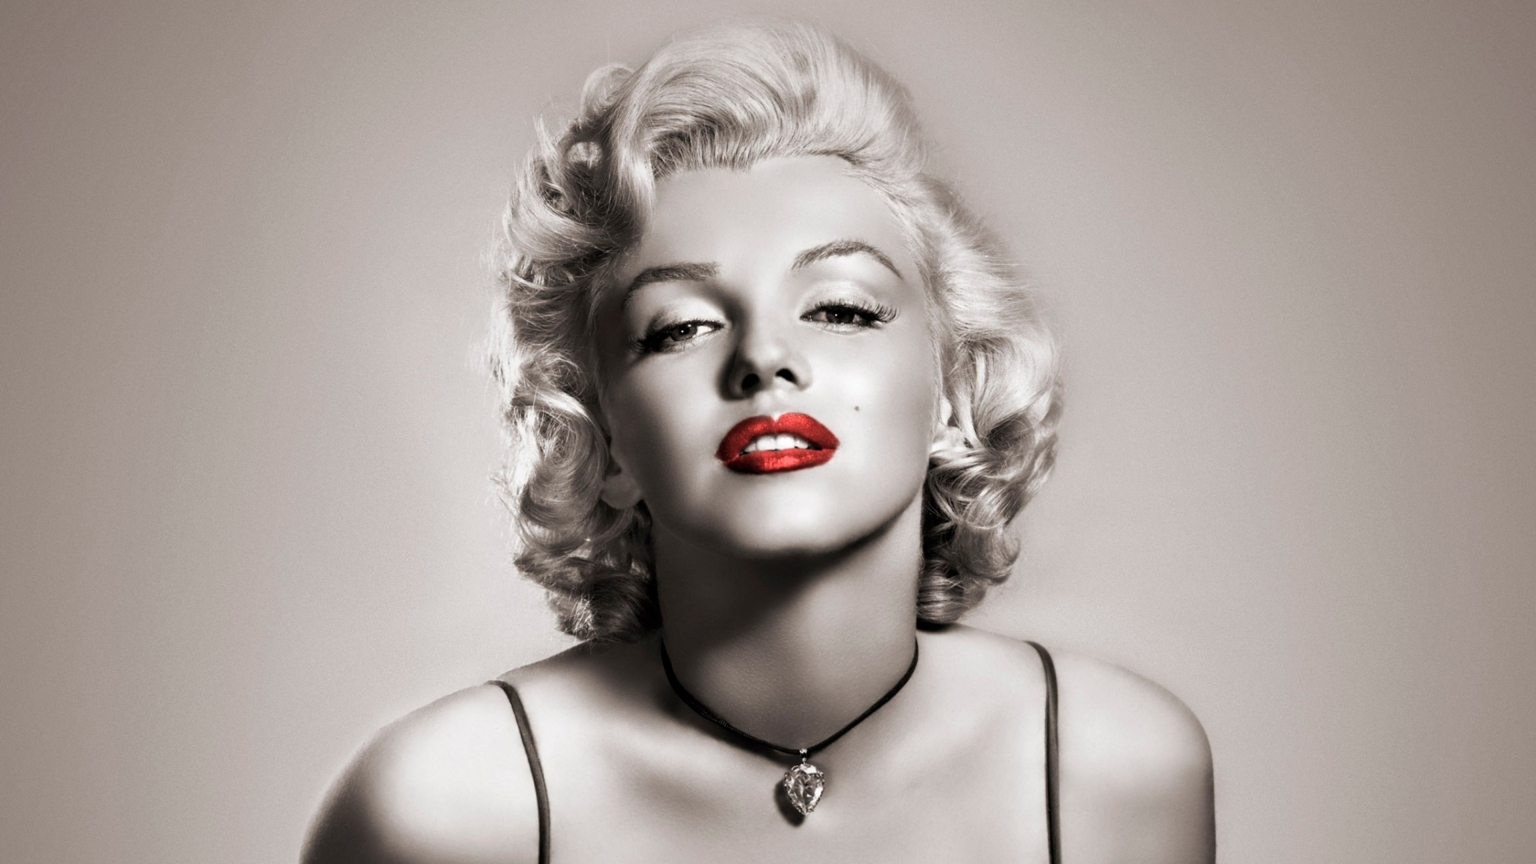 Marilyn Monroe Red Lips for 1536 x 864 HDTV resolution